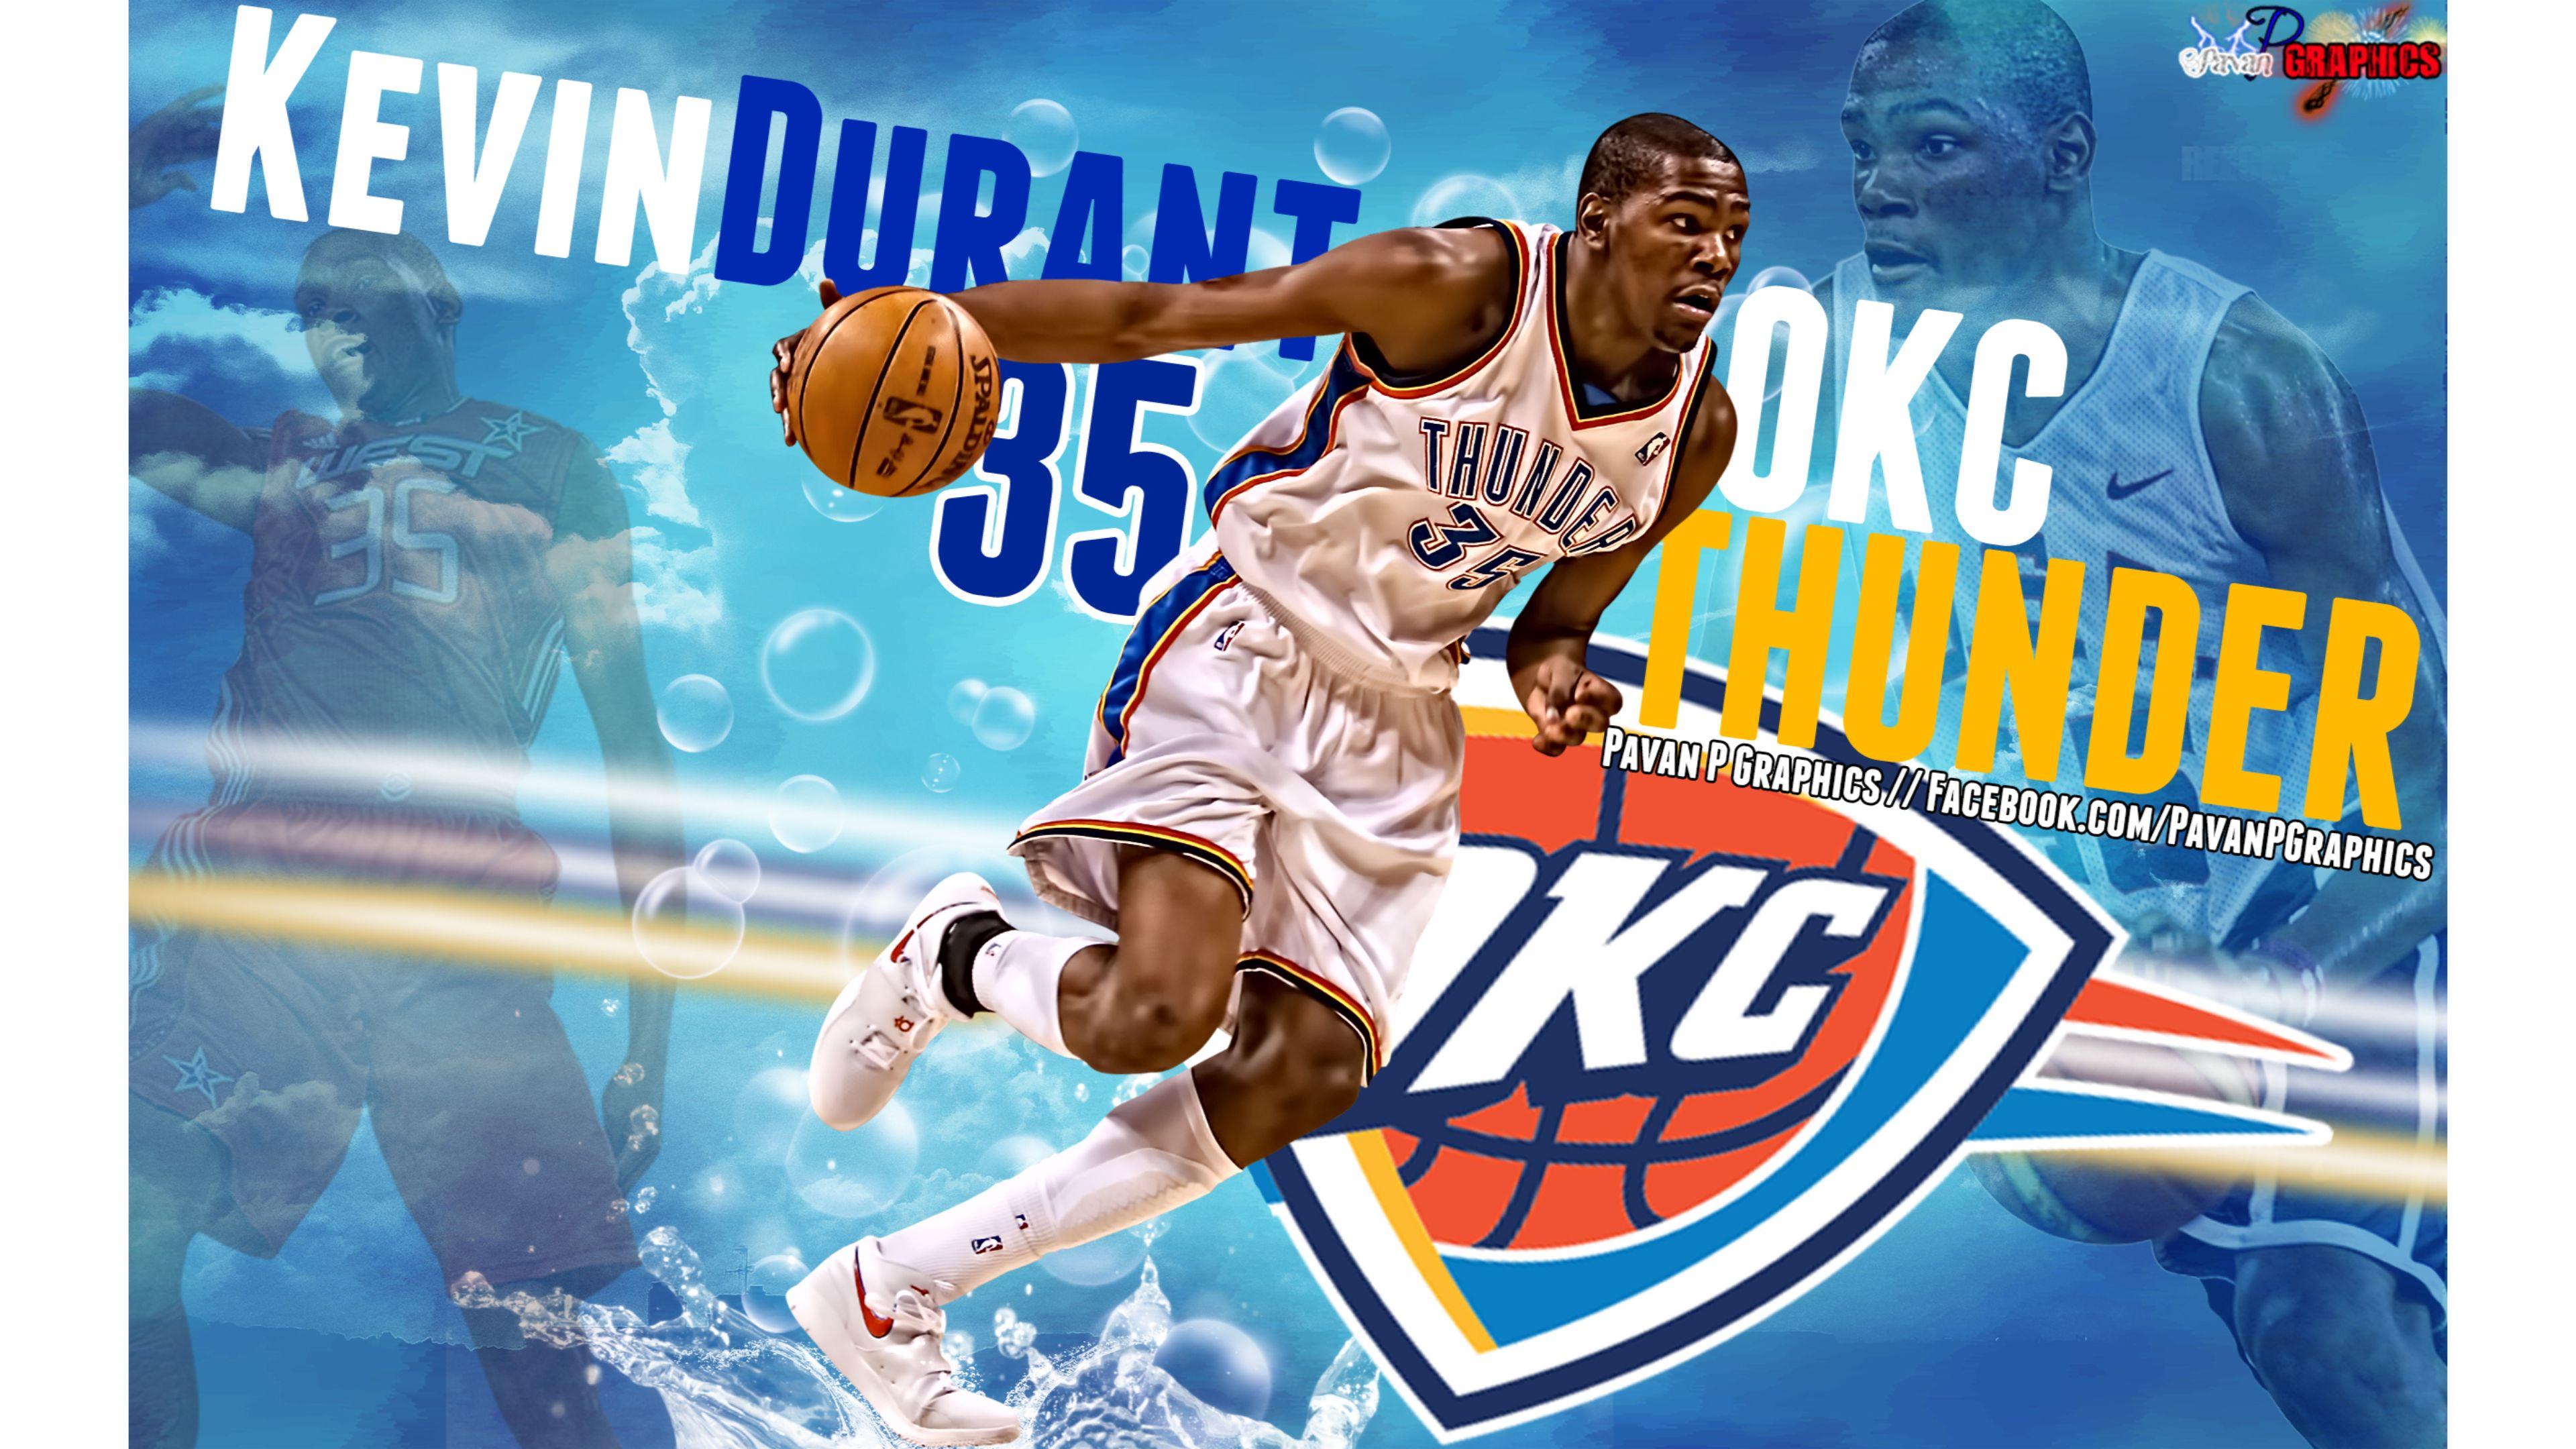 New OKC Thunder Kevin Durant 4K Wallpaper. Free 4K Wallpaper